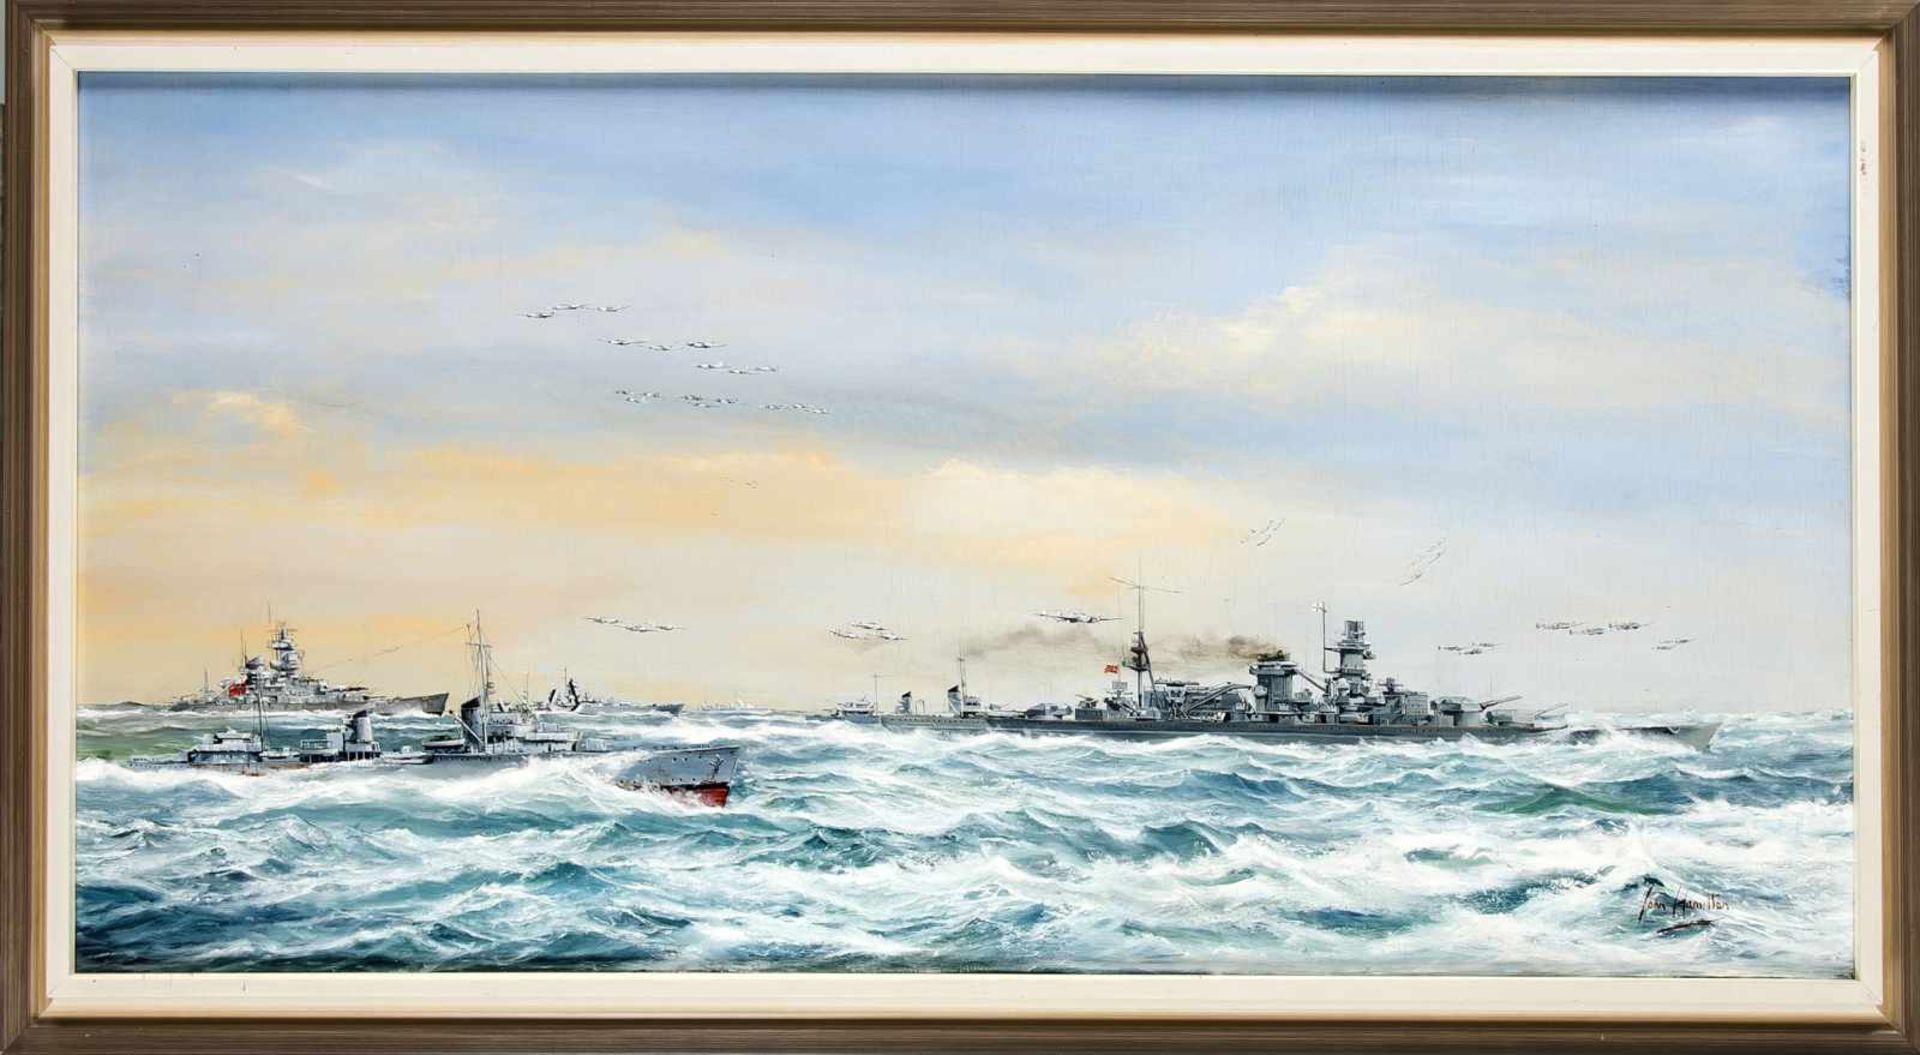 John Hamilton (1919-1993), britischer Marinemaler, großes Kreuzergeschwader mitKampfflugzeugen